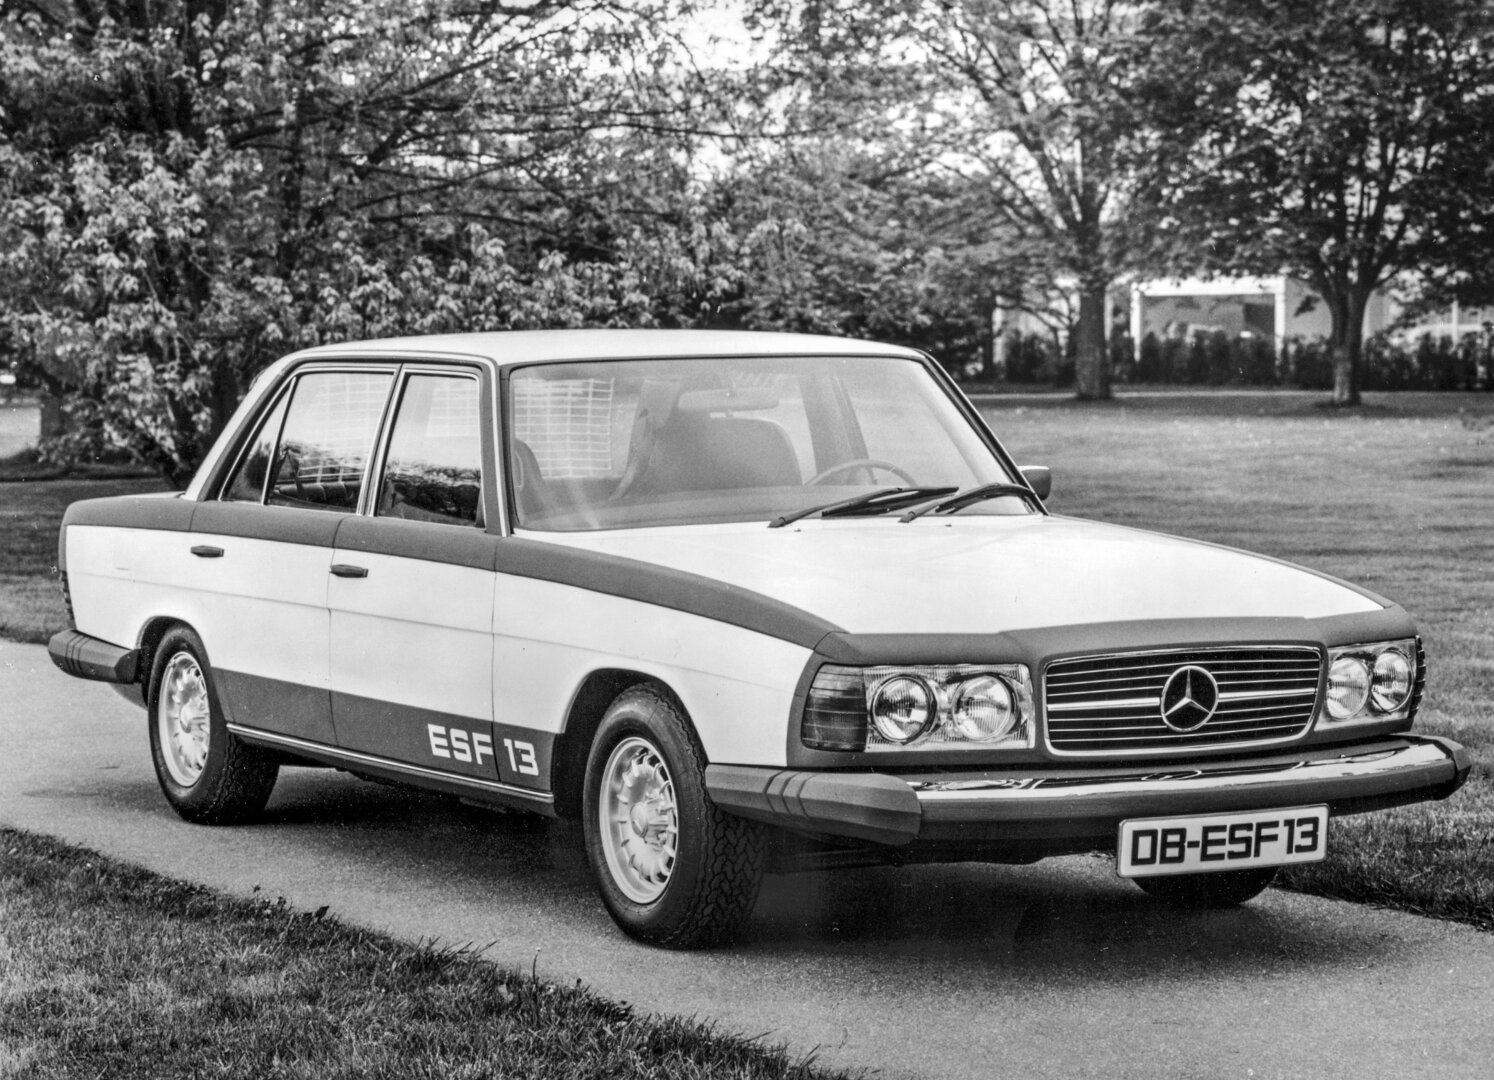 50 años del Mercedes-Benz ESF 13: un experimento de seguridad